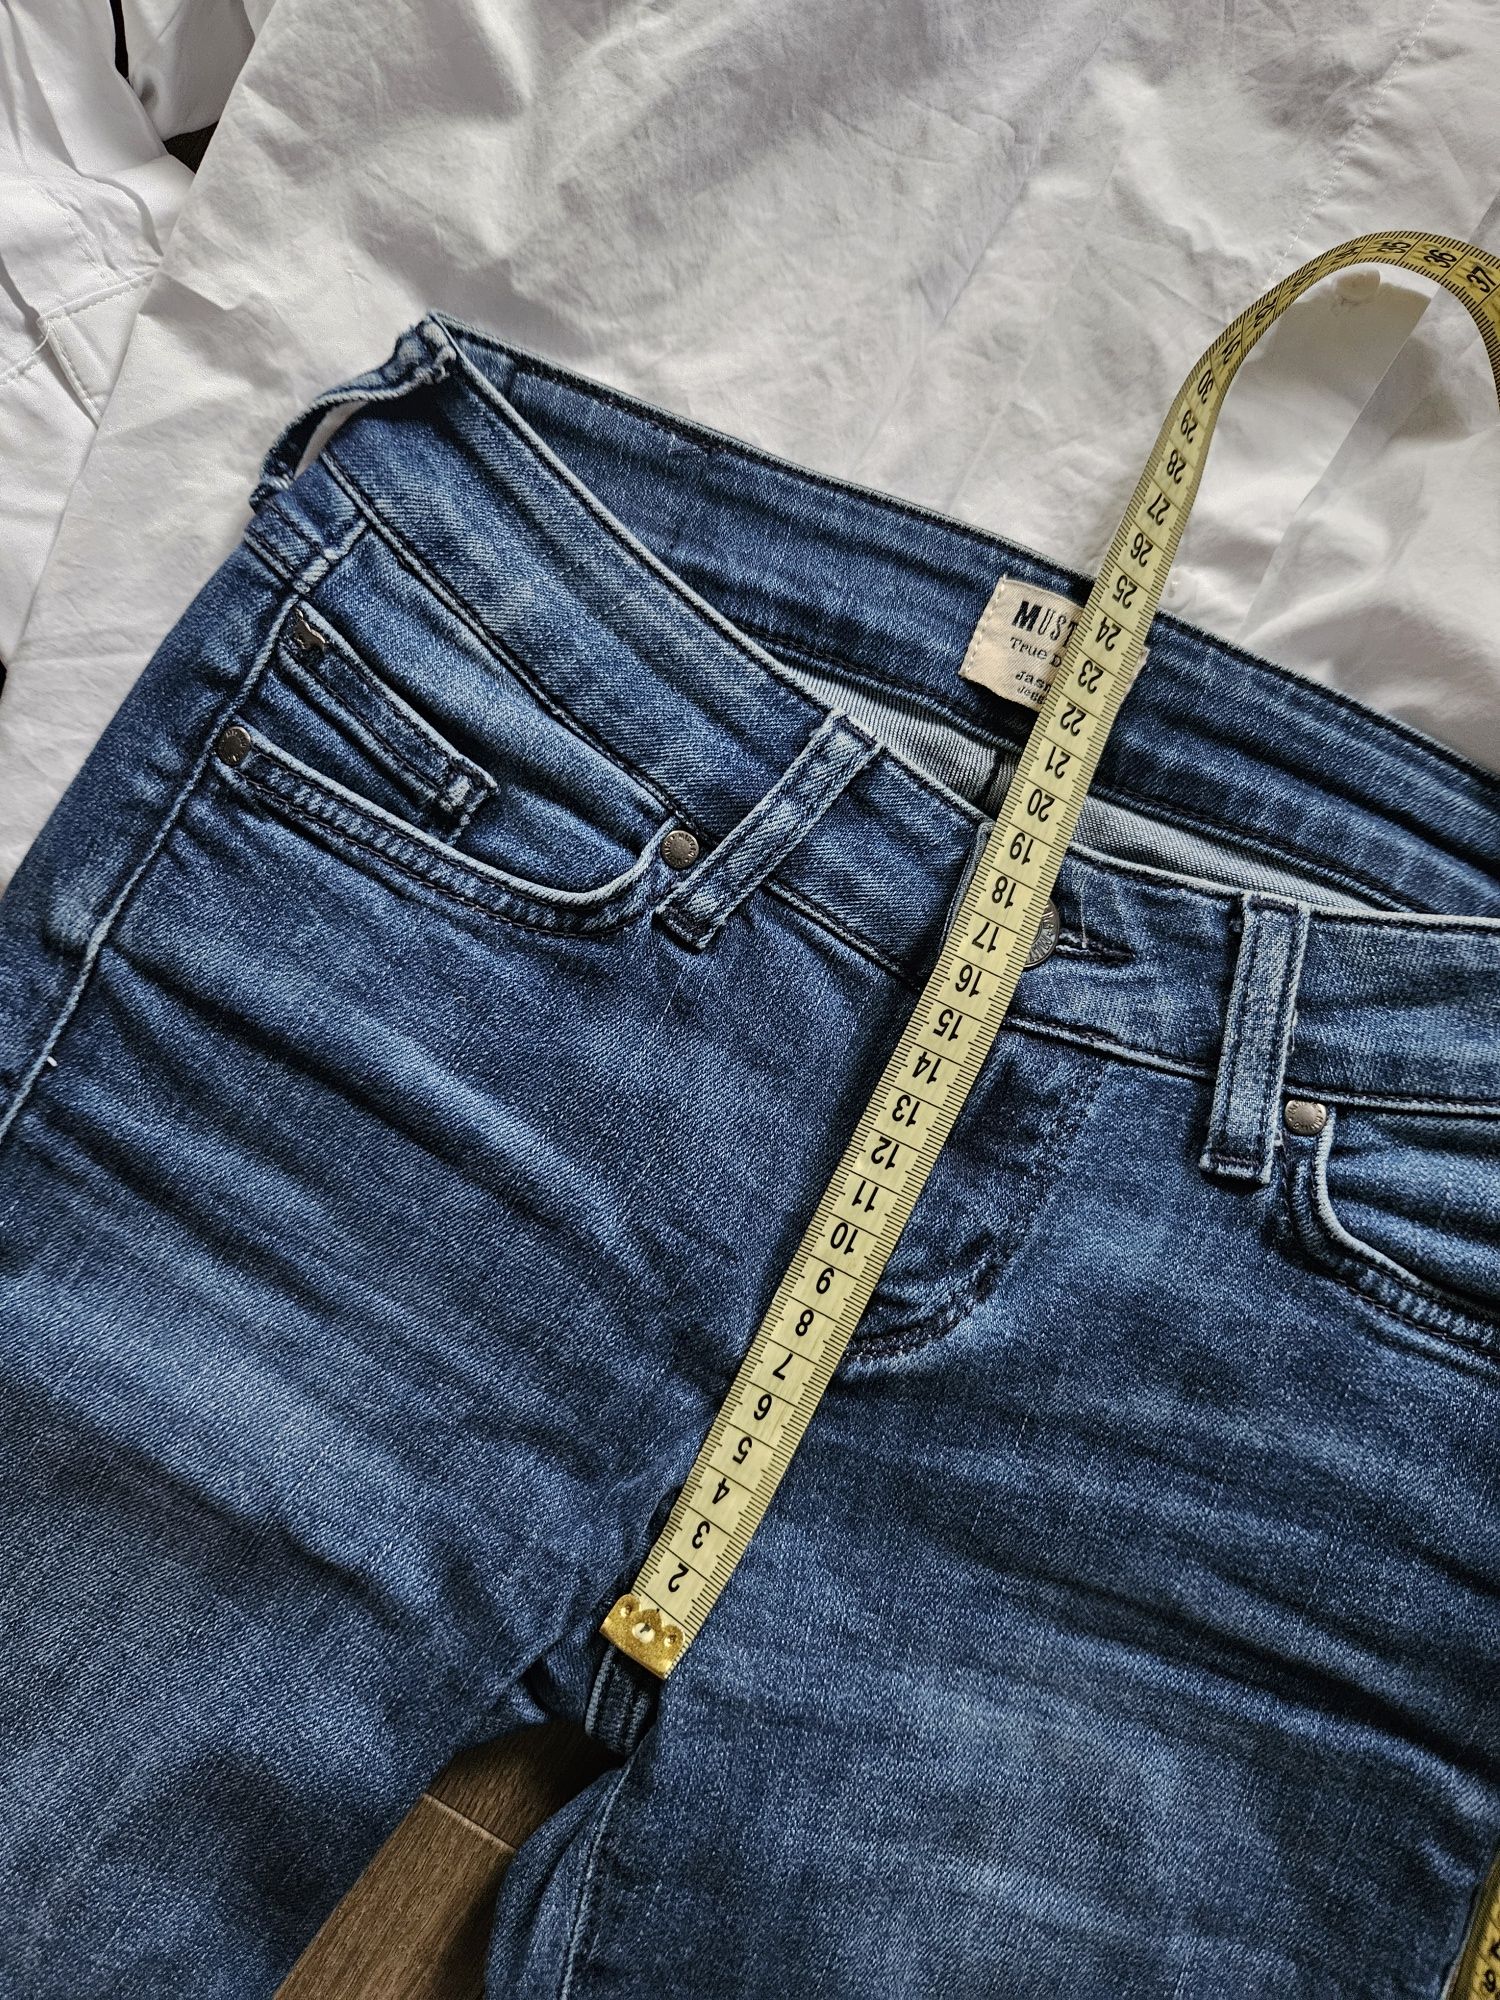 24/32 mustang jeansy xs 34 spodnie jeansowe rurki